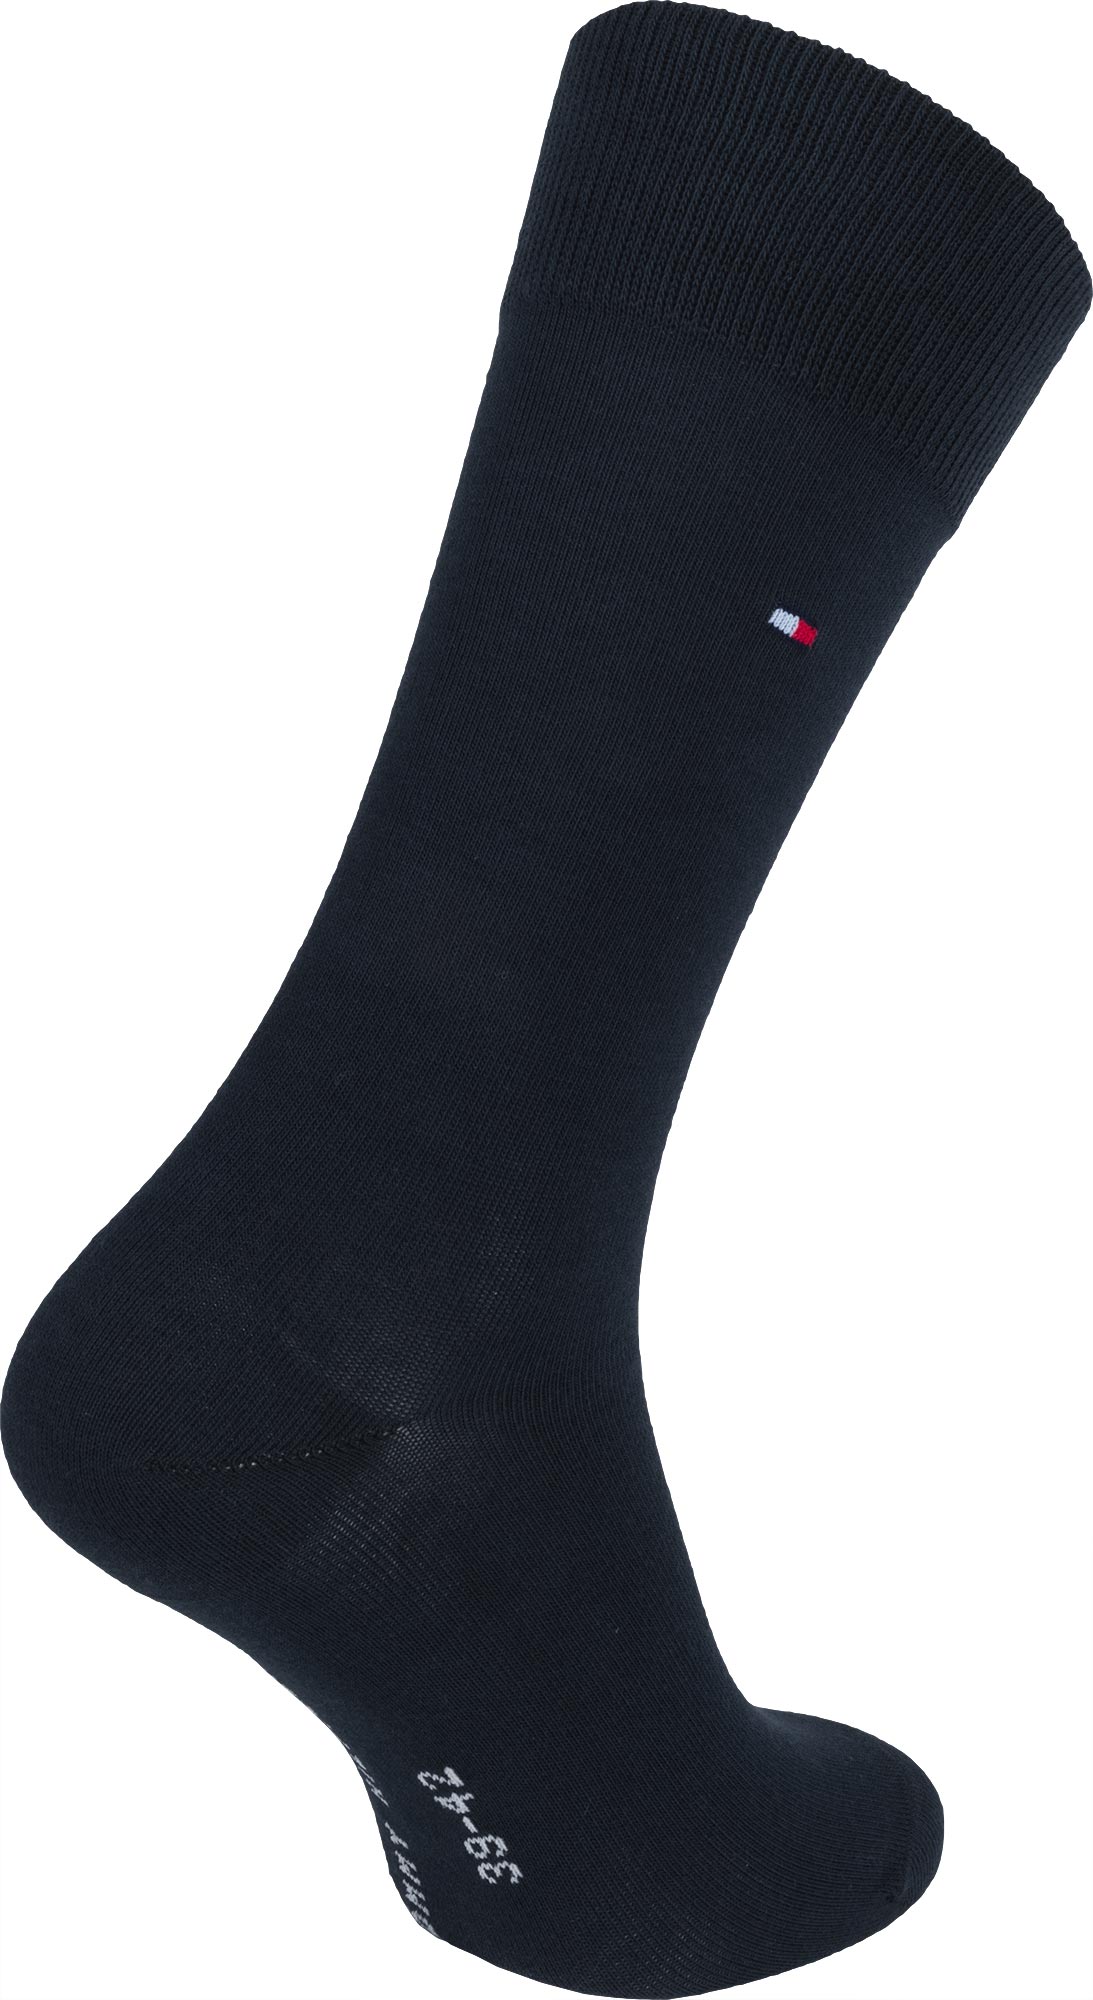 Men's high socks